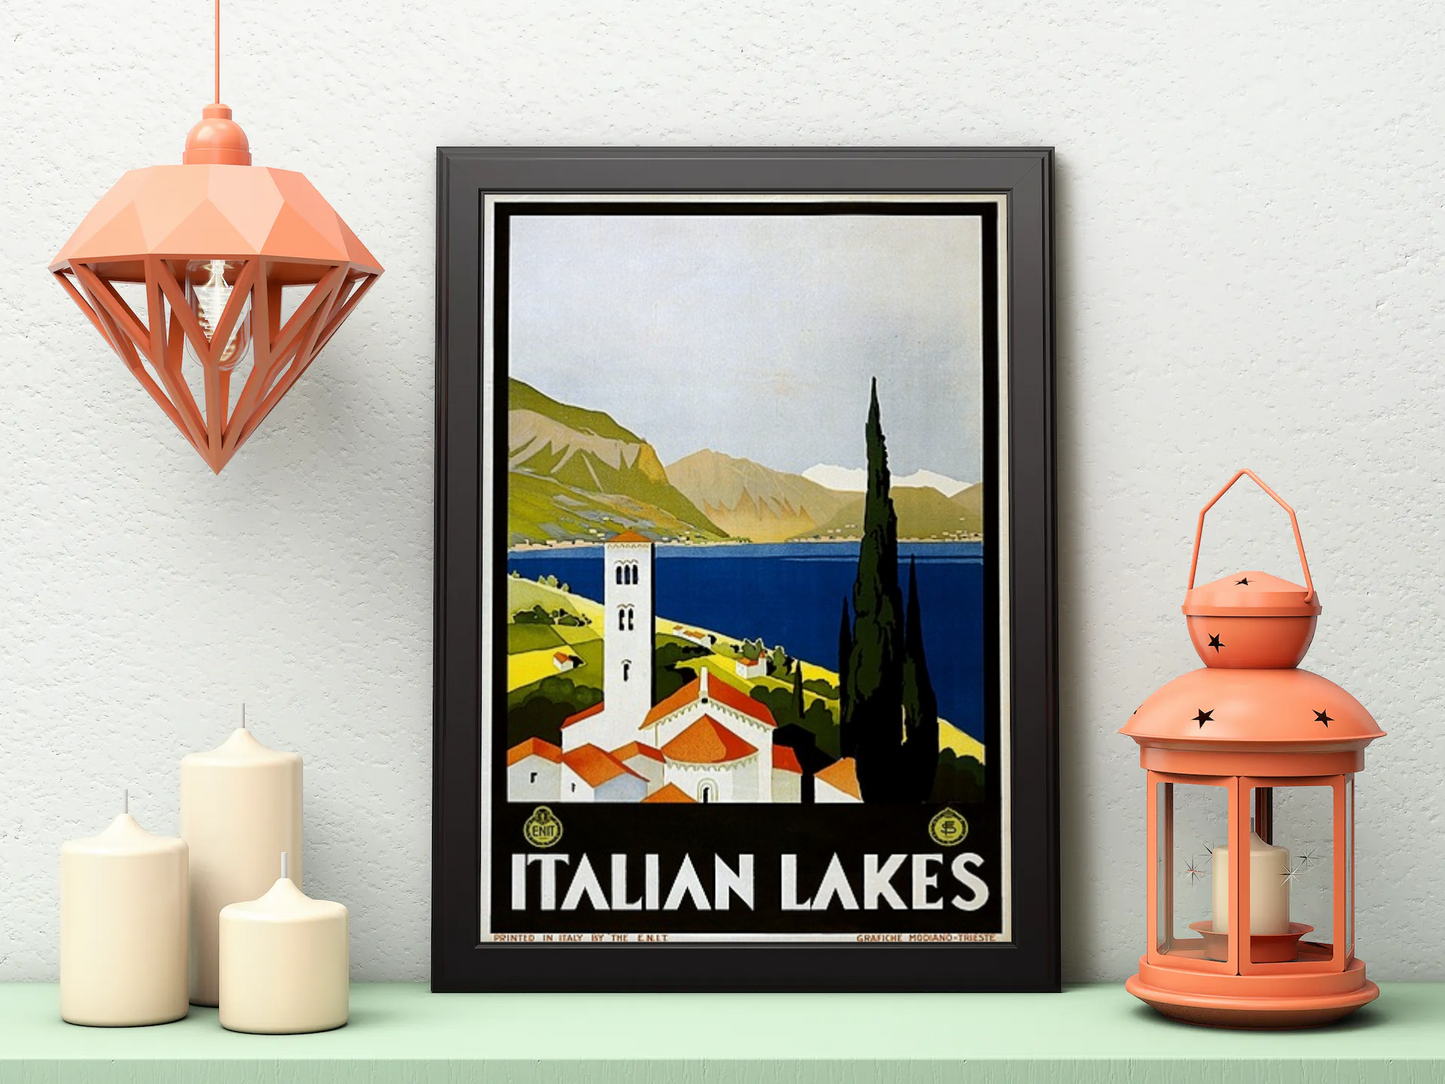 Vintage Italian Lakes Travel Art Painting